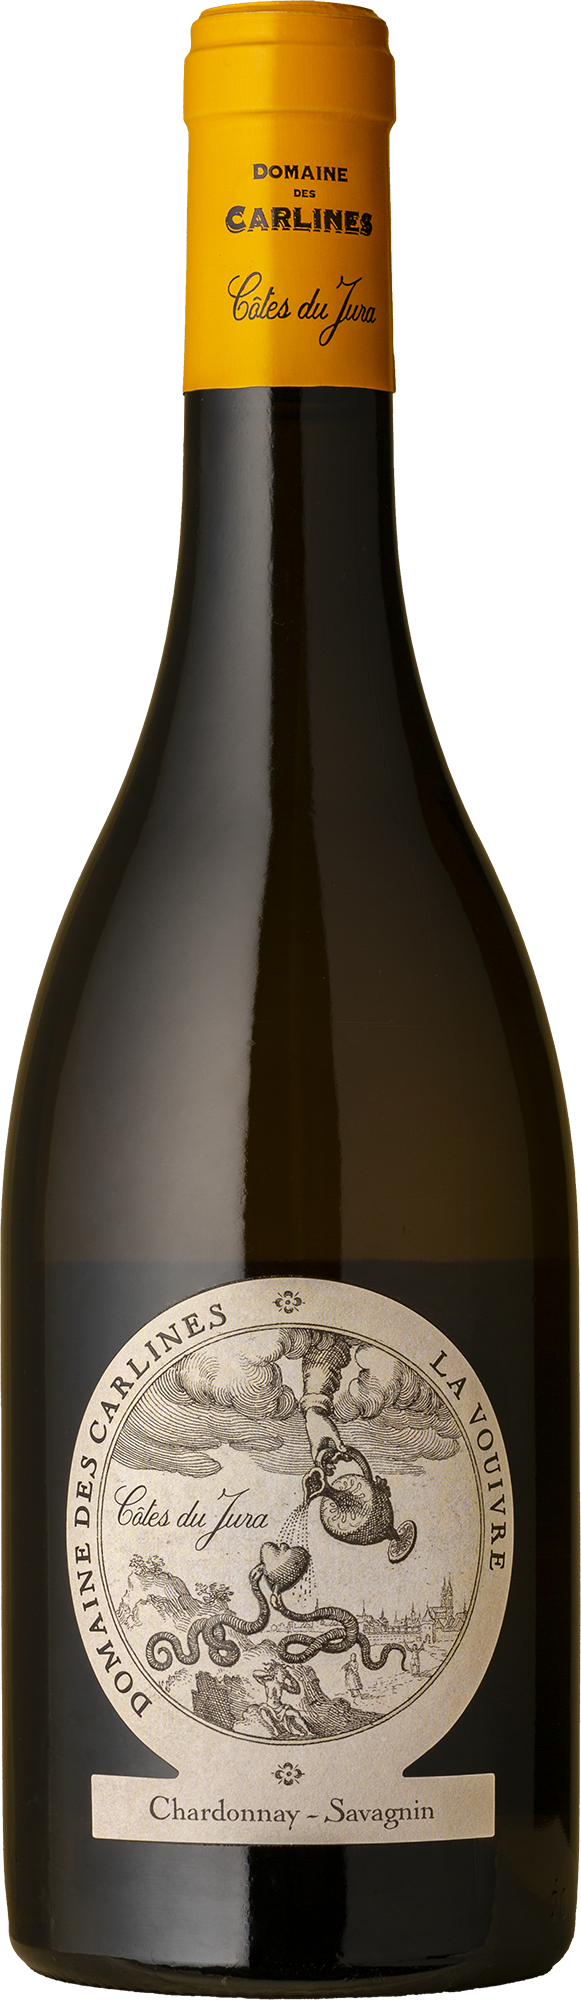 Domaine des Carlines - Cotes du Jura La Vouivre Chardonnay / Savagnin 2018 White Wine